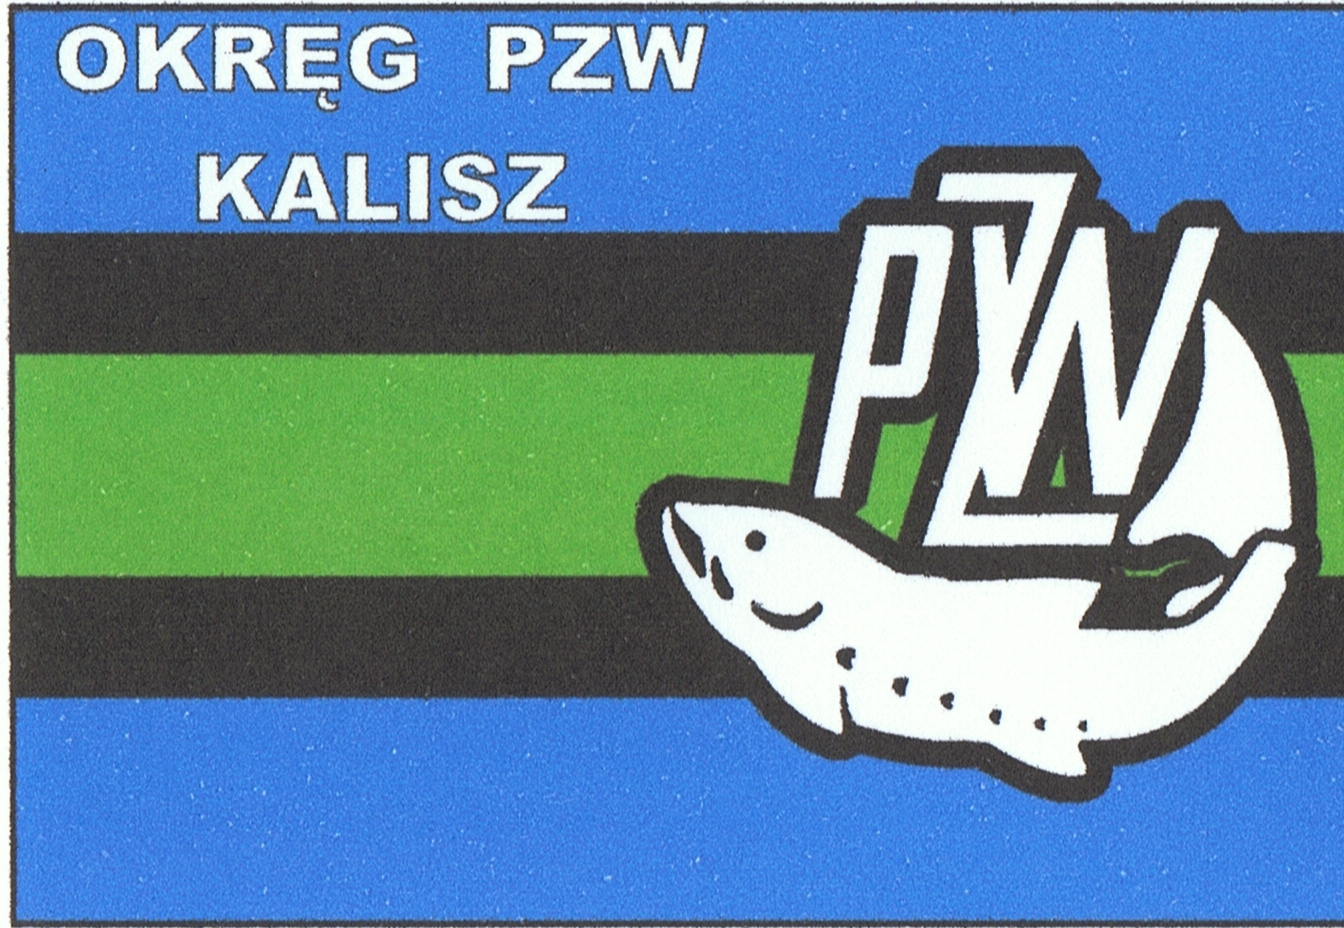 Wojciech Stanisławski 2970 (2.0) 3275 (1.0) 6245 3.0 1 Grzegorz Lenczewski Koło WSK Kalisz 4170 (2.0) 2960 (2.0) 7130 4.0 2 Adam Grabowski 8125 (1.0) 2265 (4.0) 10390 5.